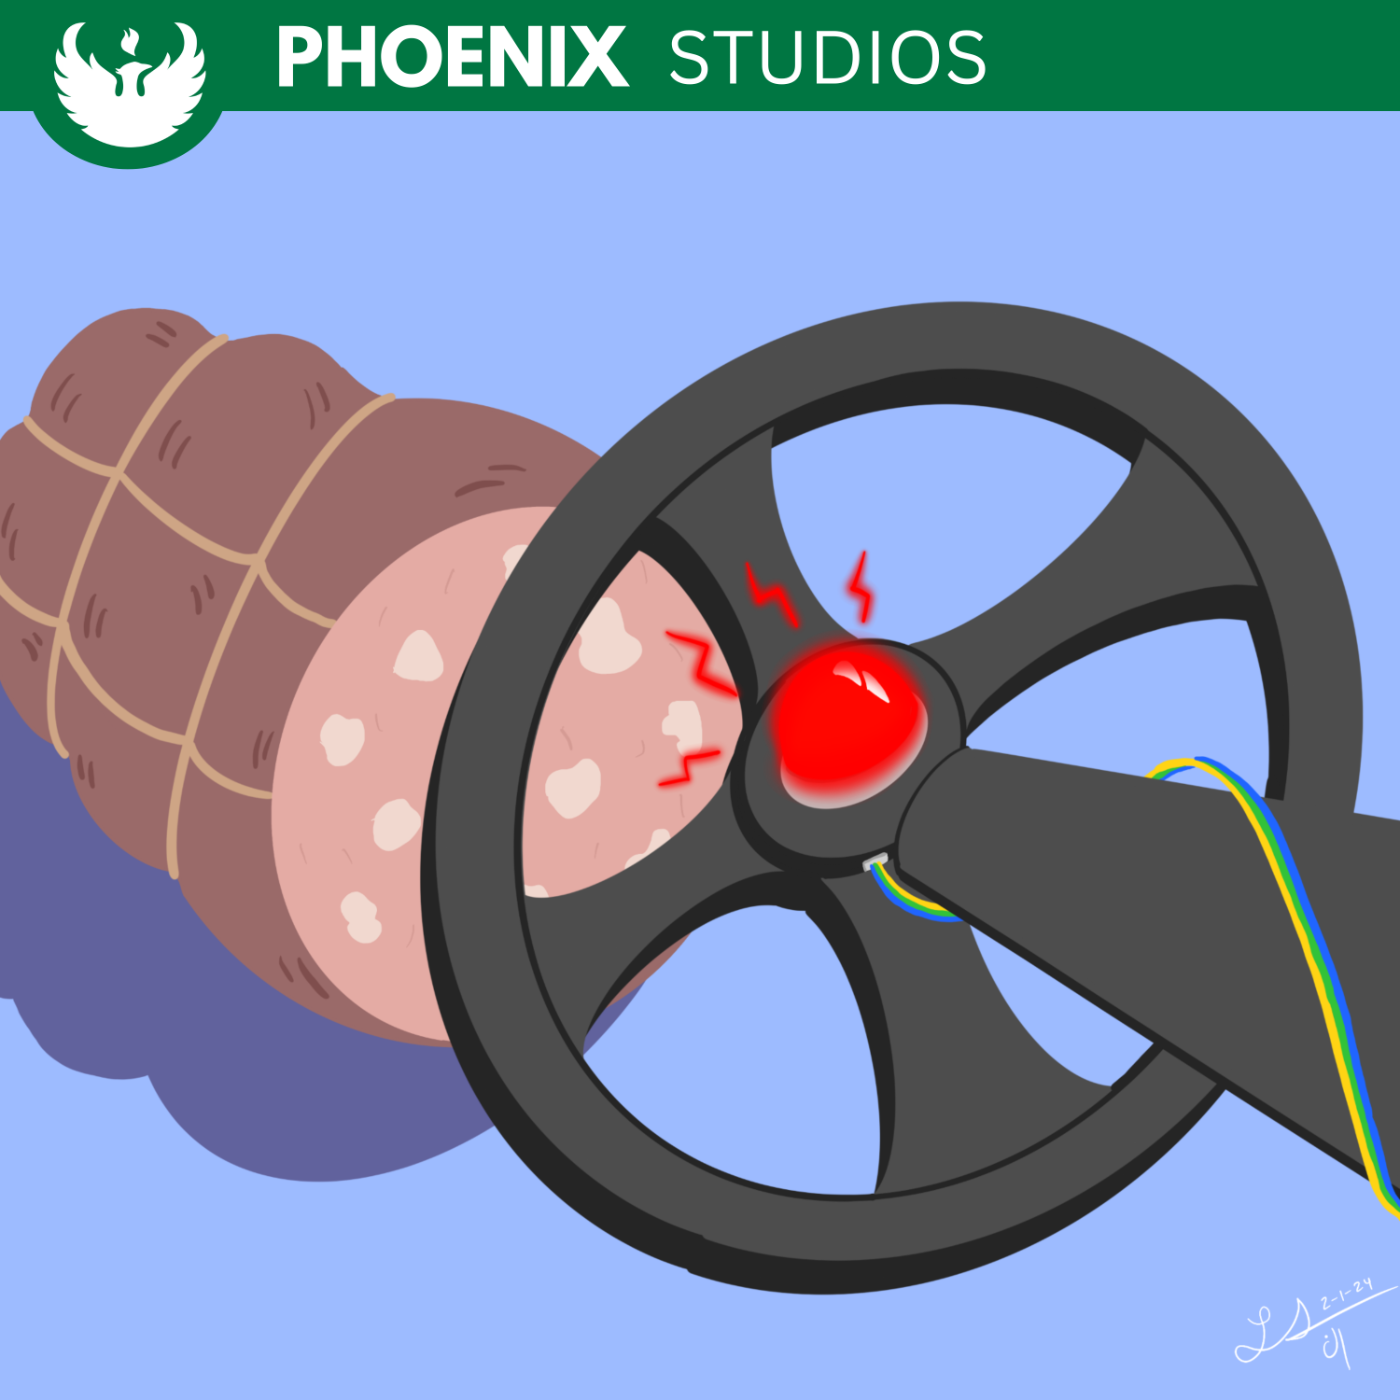 Phoenix Studios Baloney Detection